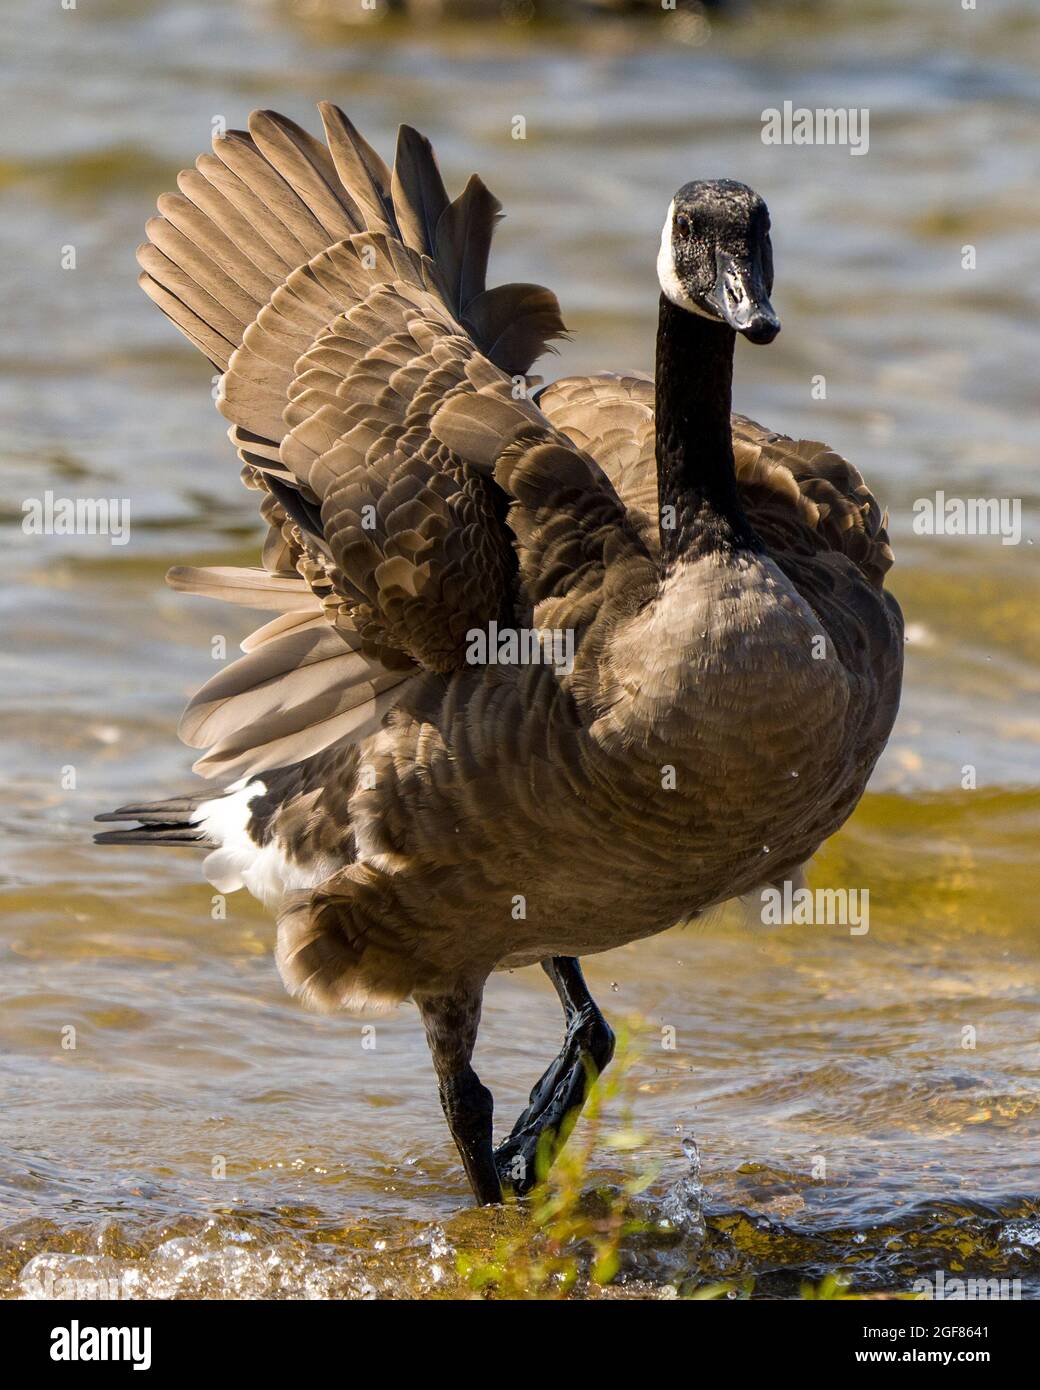 Canadá Geese caminando en el agua mostrando suaves alas de plumaje de plumas marrones en su entorno y hábitat circundante. Canadiense Geese foto. Foto de stock